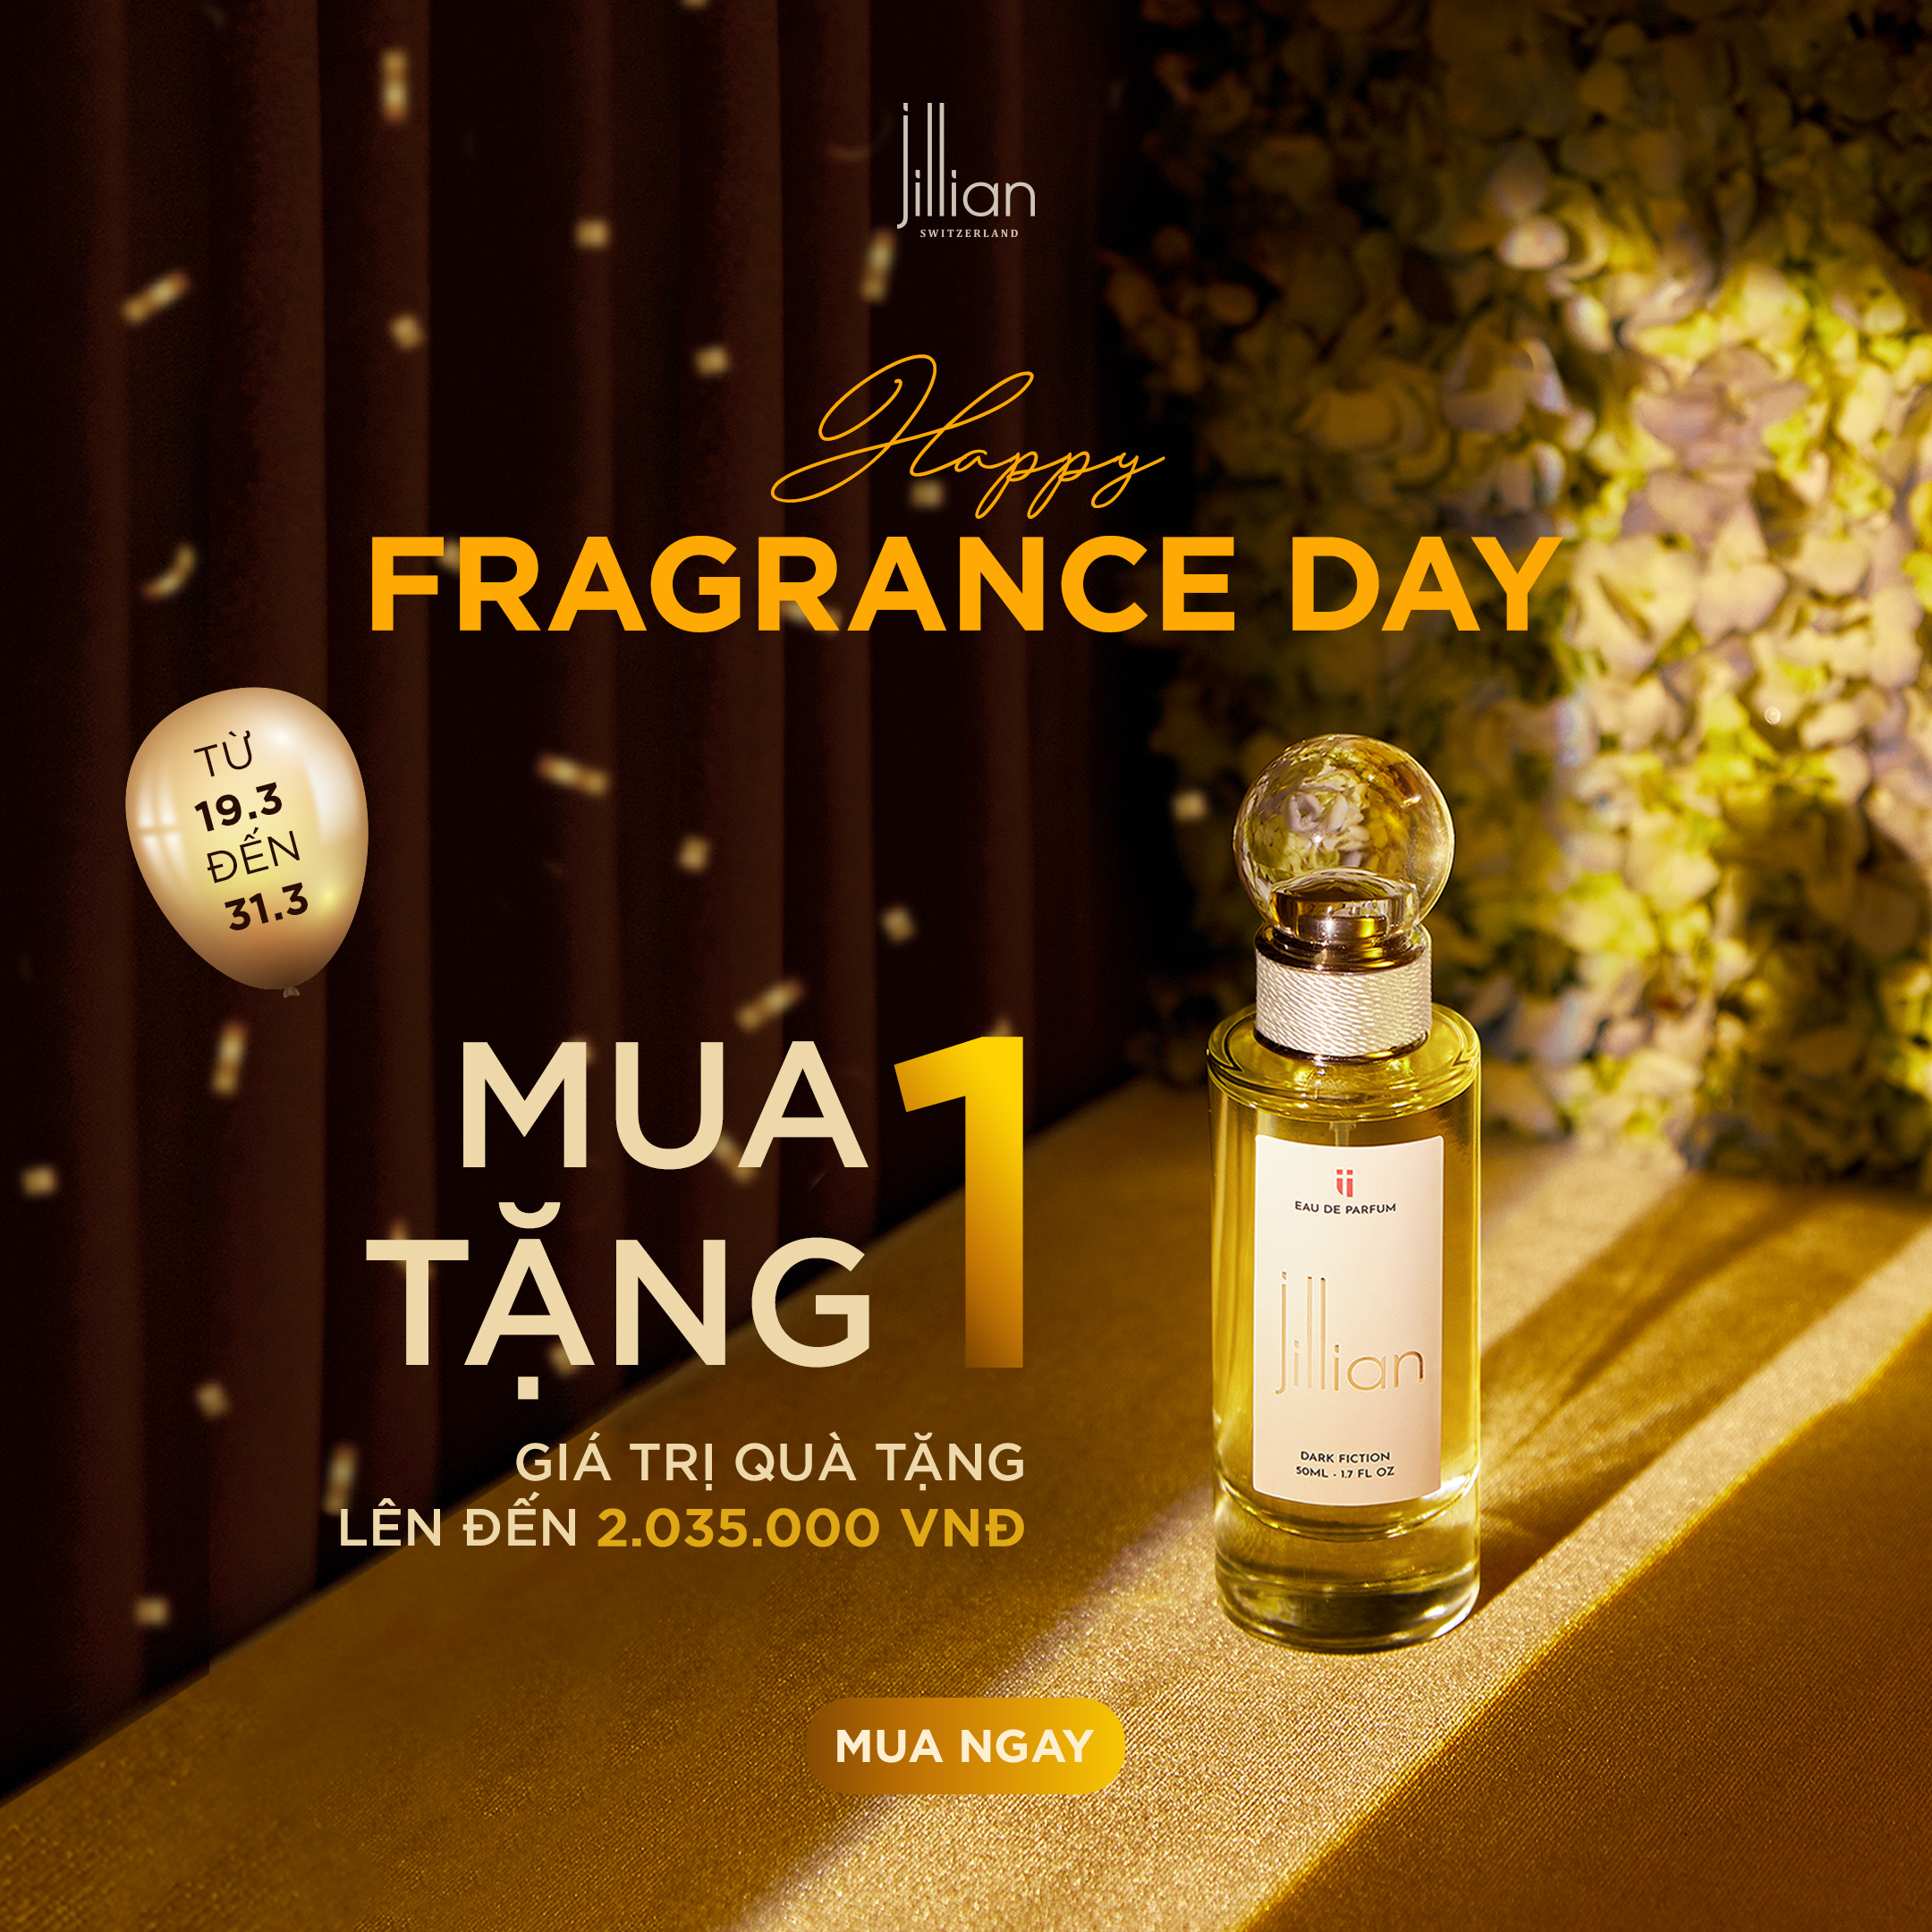 Shopping thỏa thích, quà tặng ngập tràn mừng "Fragrance Day"!